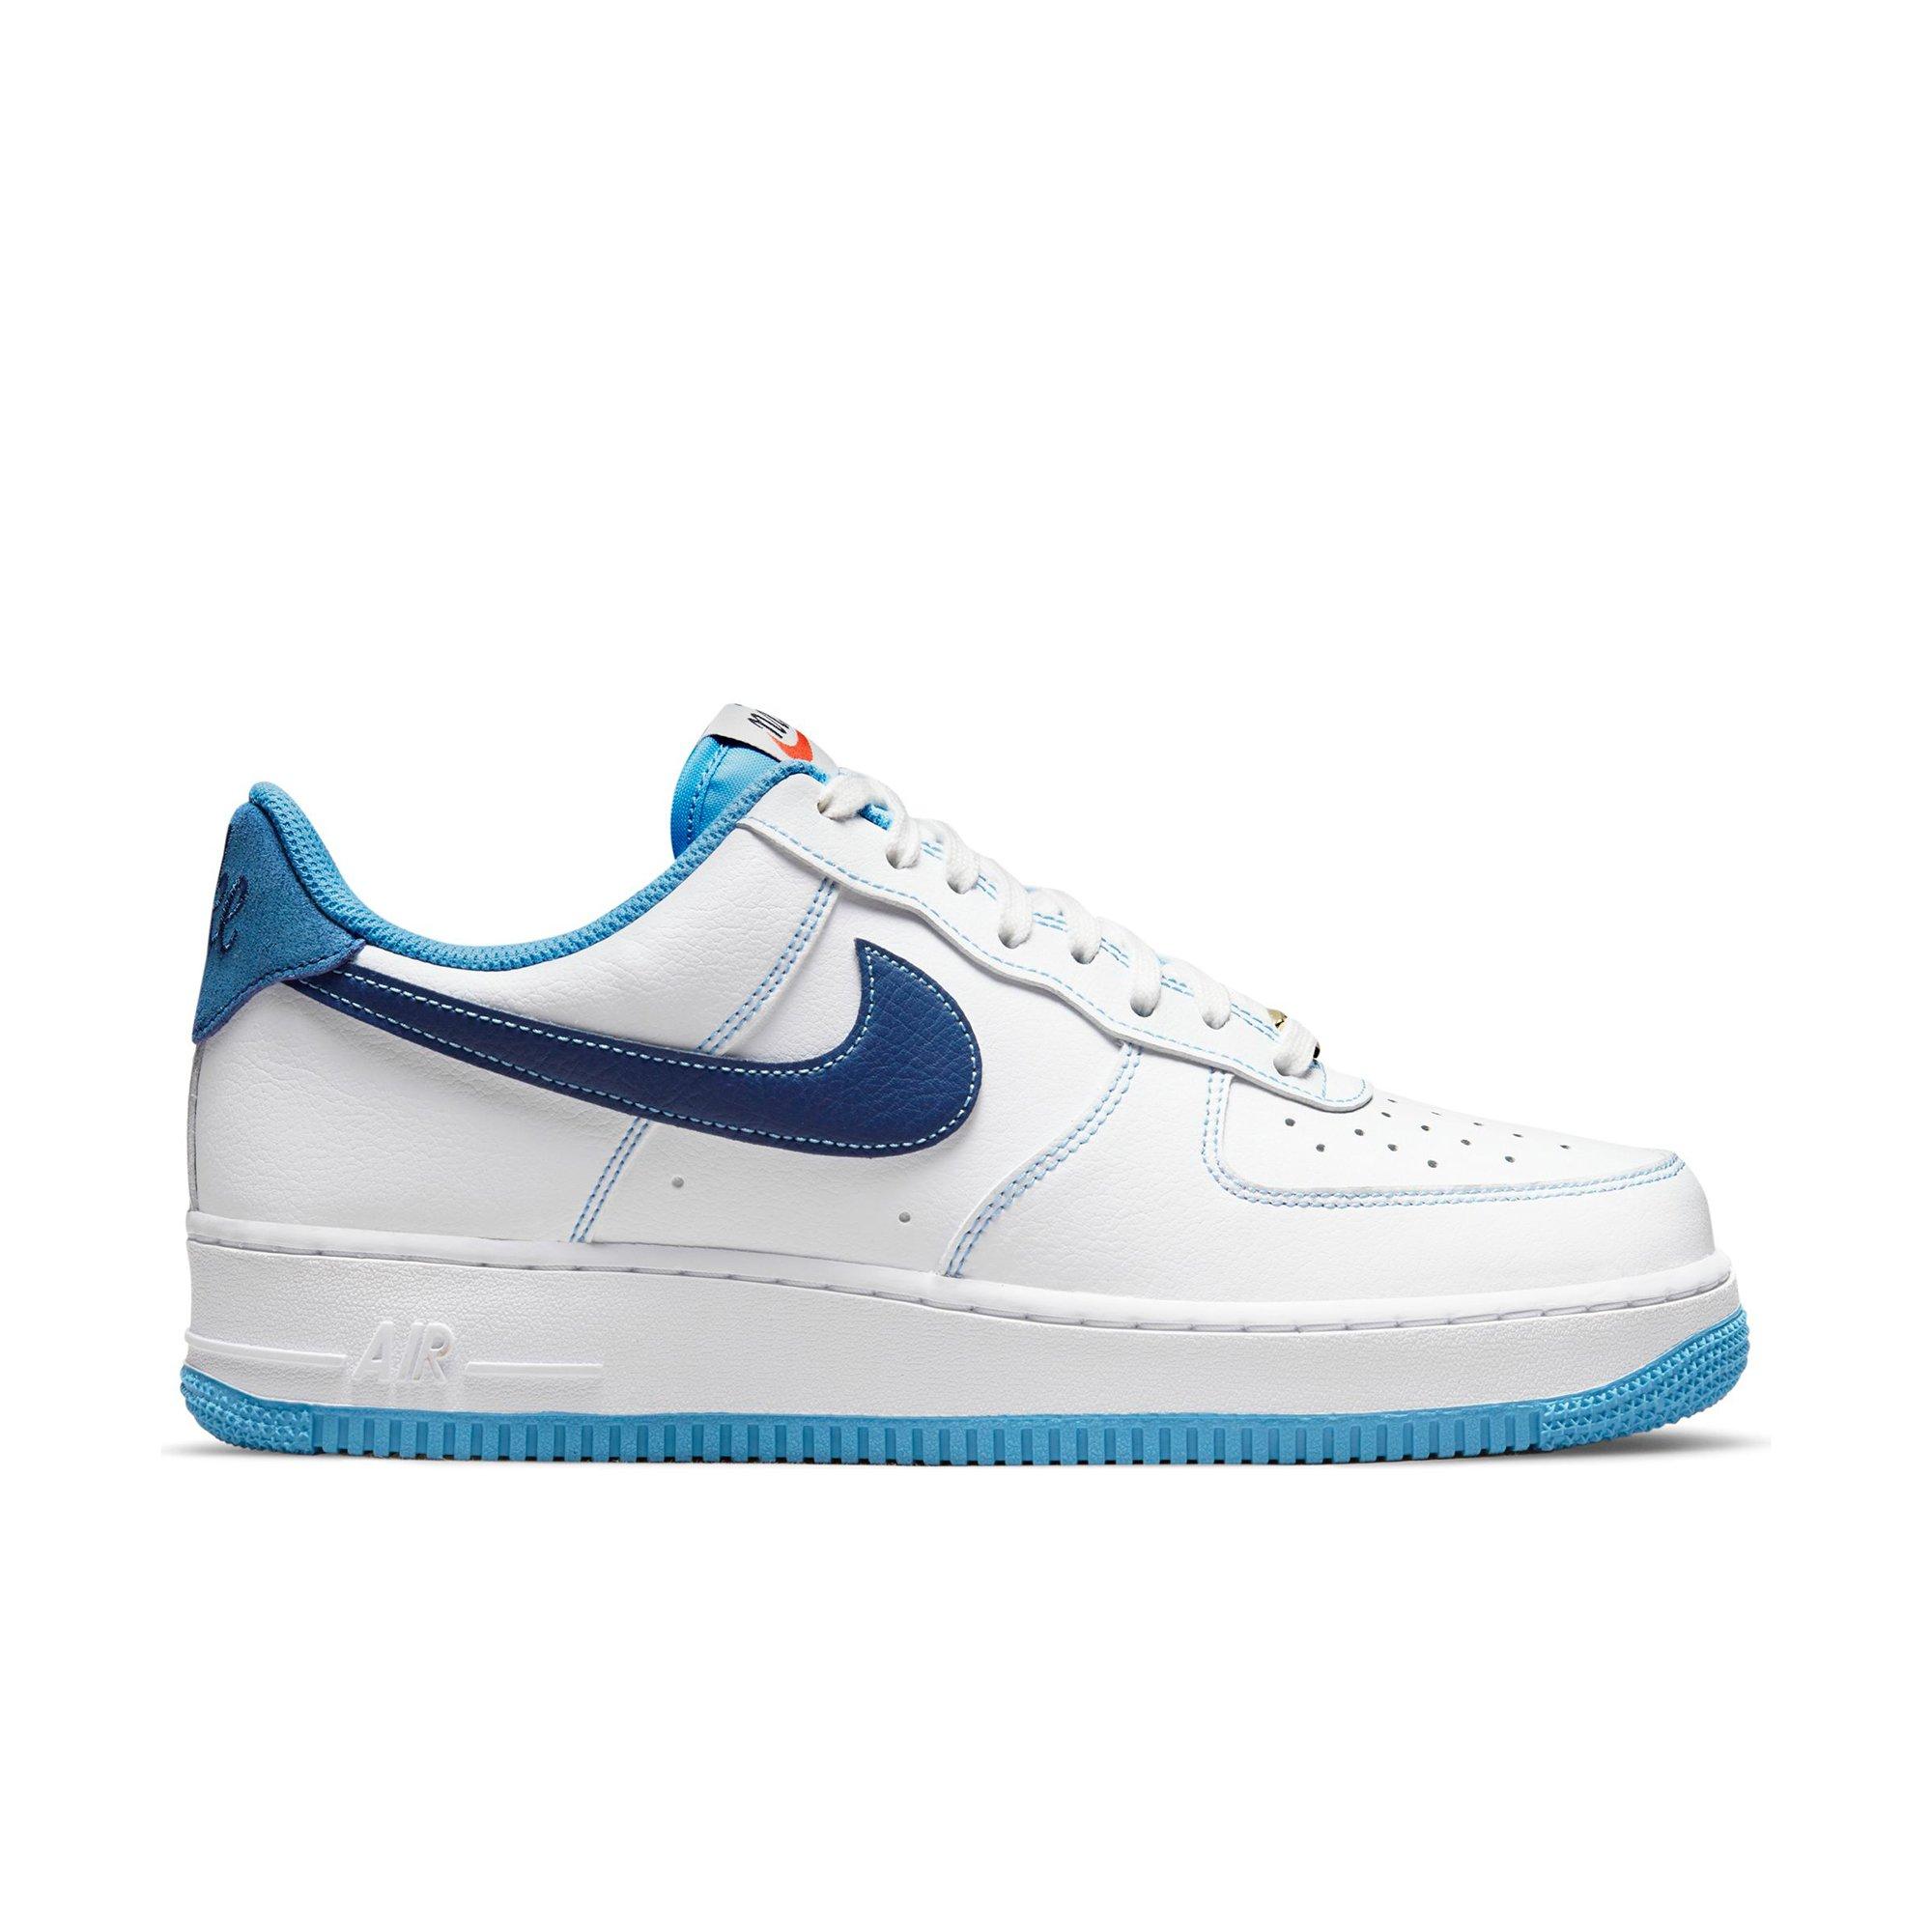 Nike Air Force 1 '07 